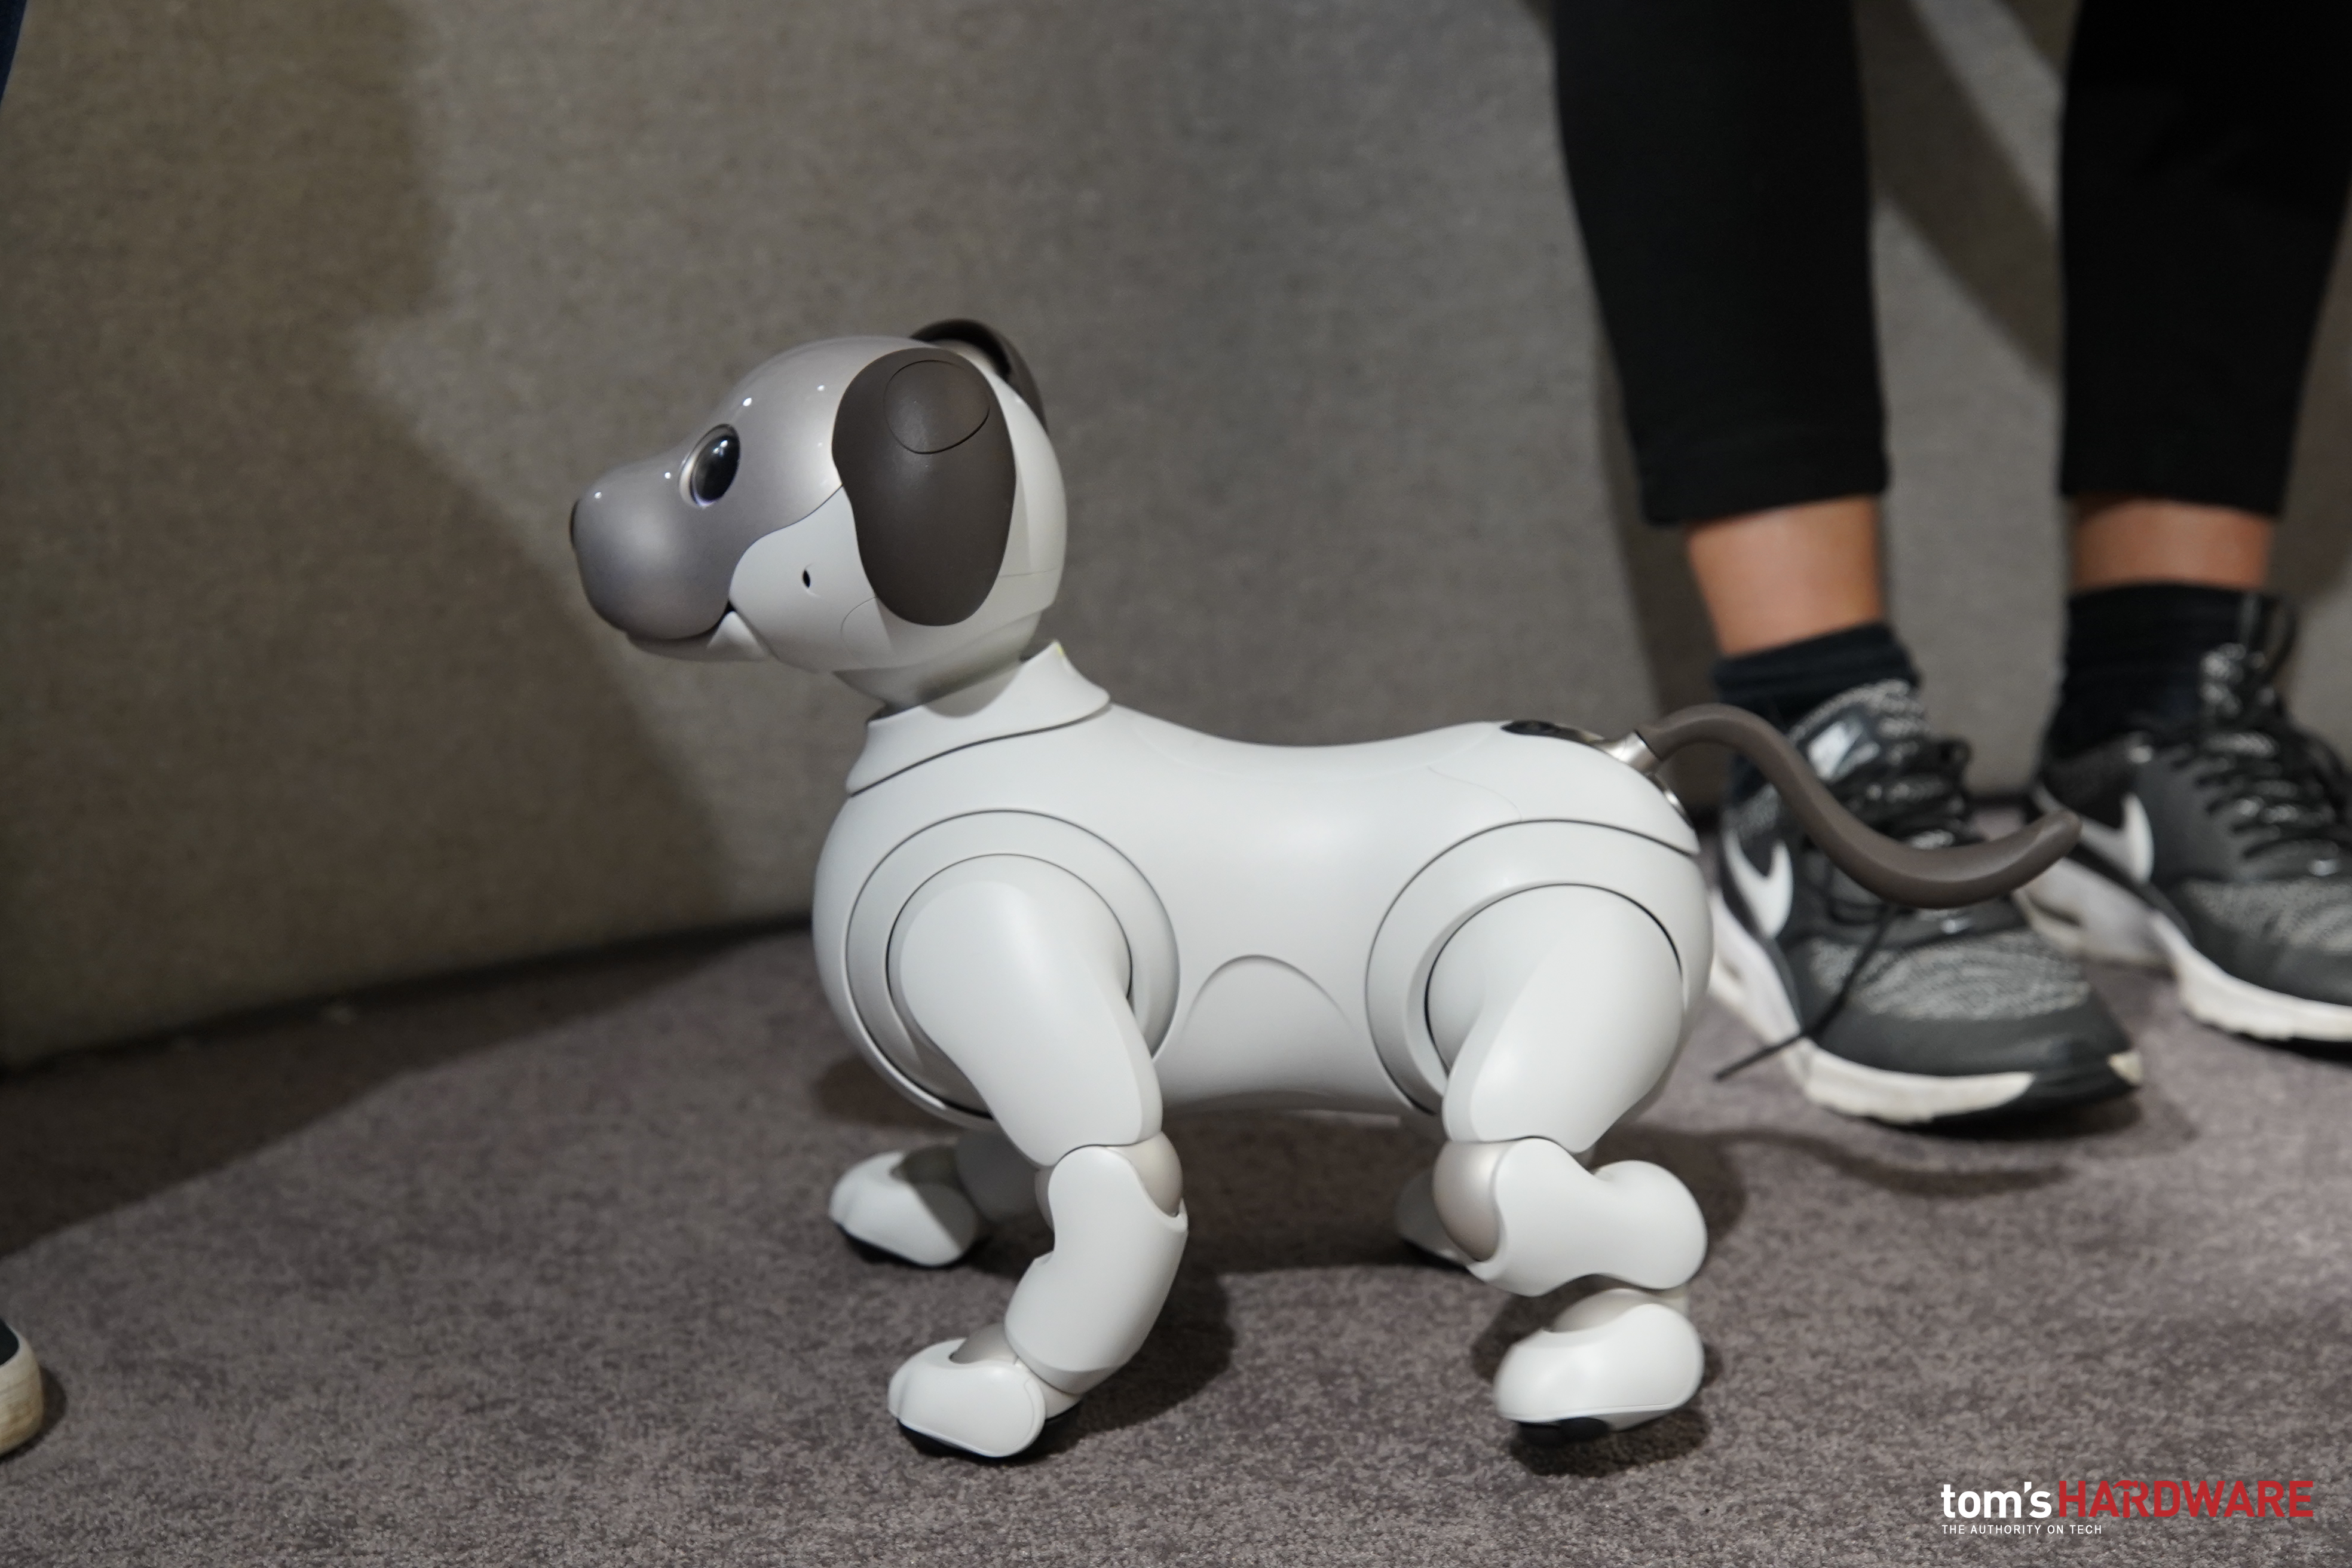 Sony AIBO a IFA 2018: il cagnolino robot che si emoziona e impara grazie all’intelligenza artificiale